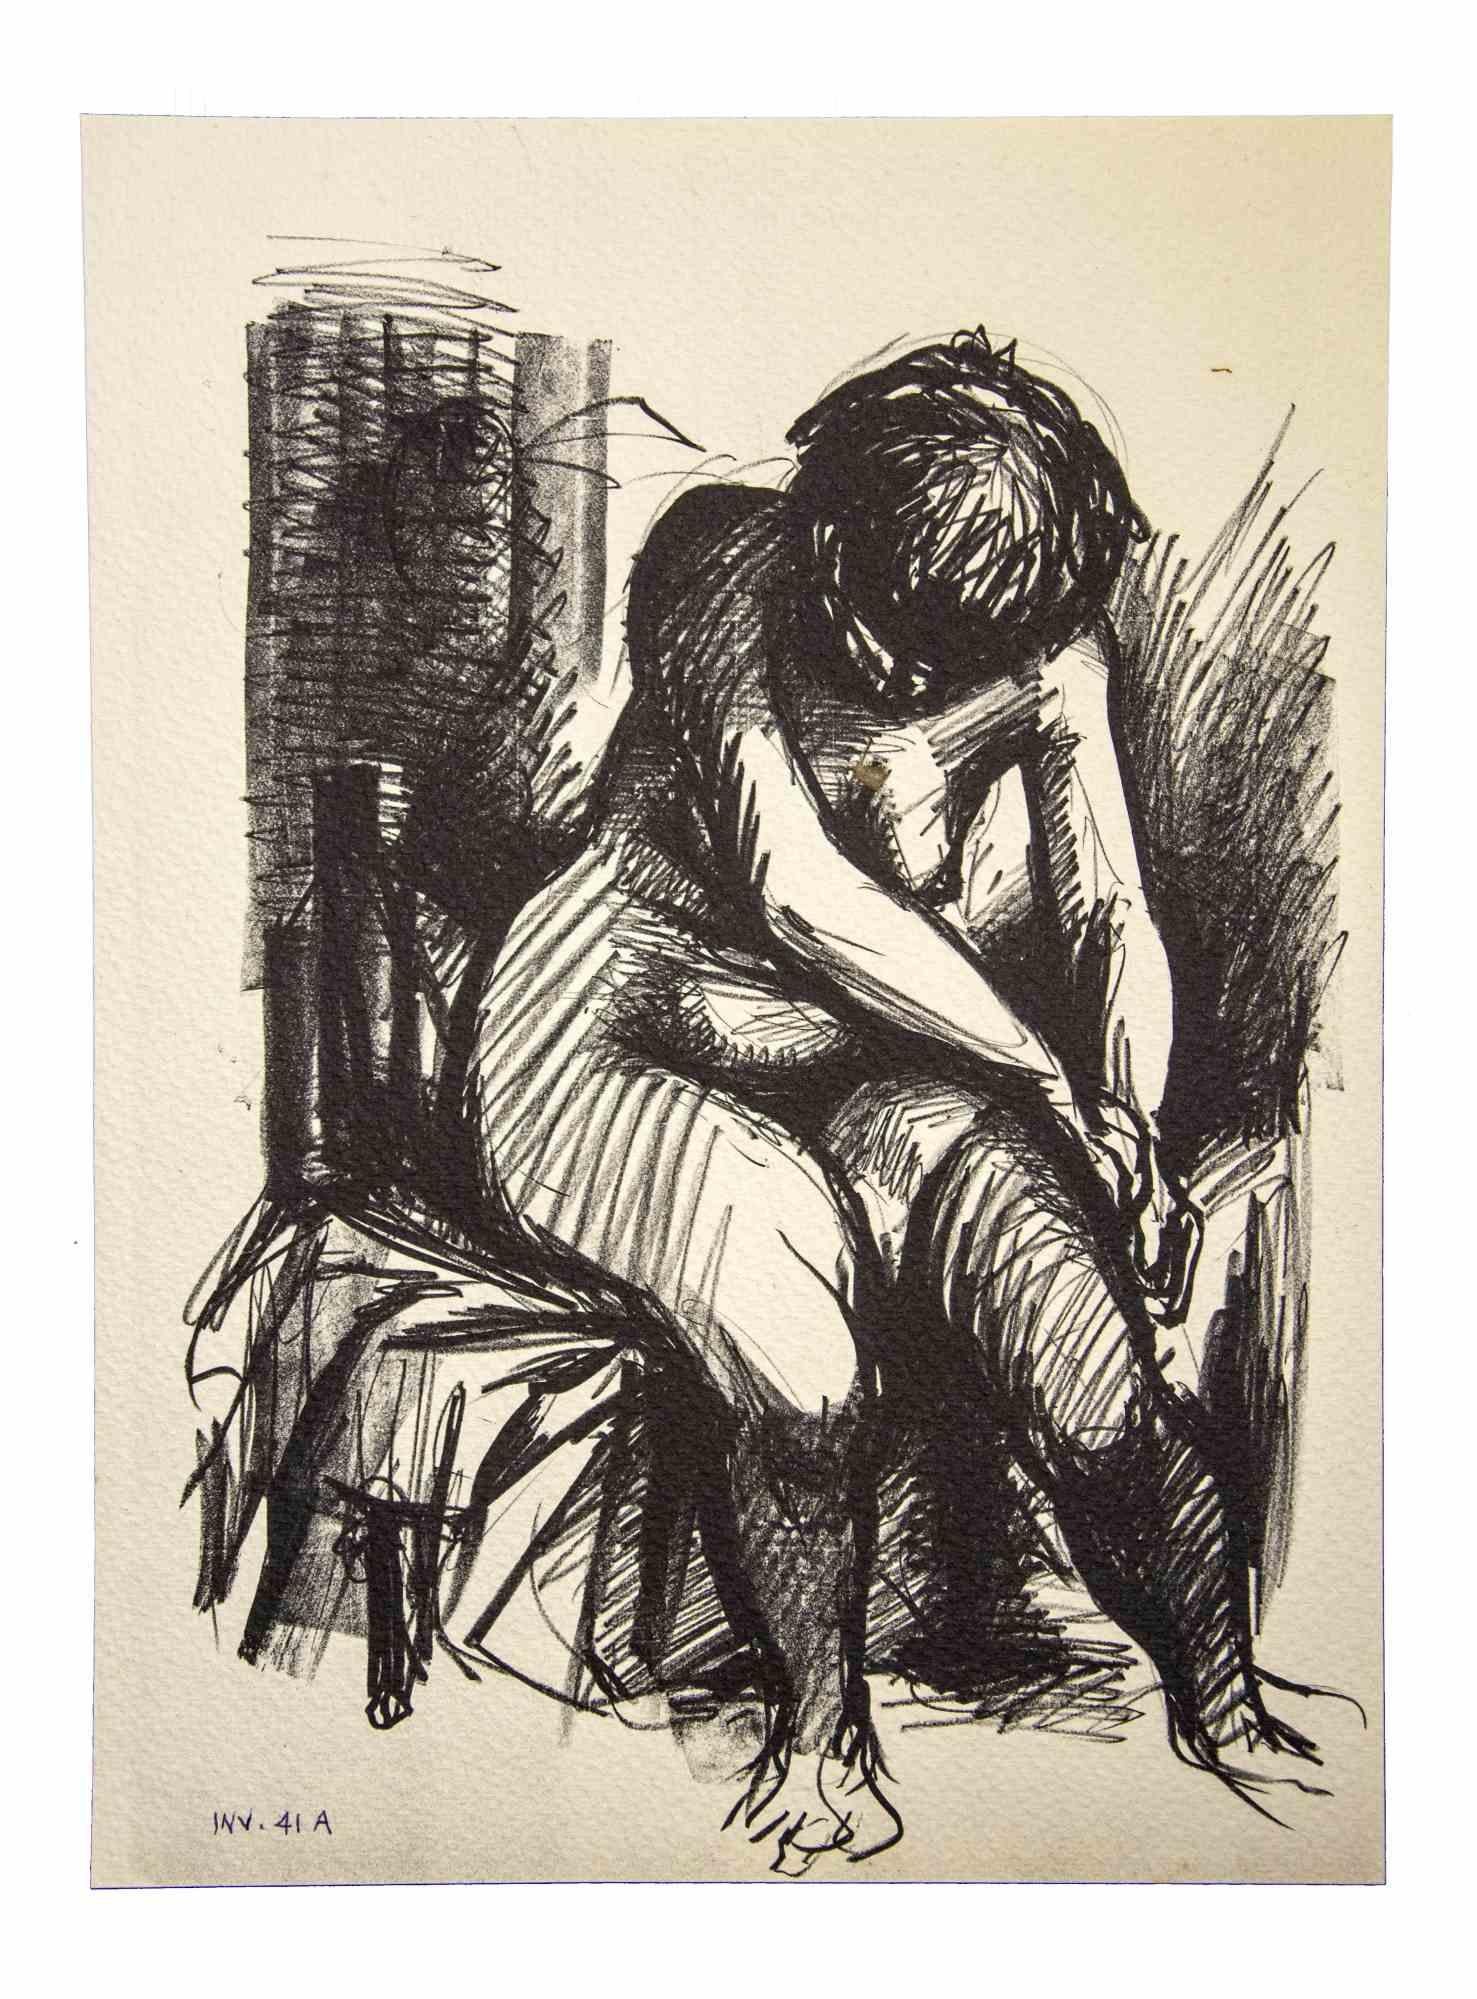 Crouched Nude ist eine Originalzeichnung mit schwarzem Filzstift auf Karton von Leo Guida aus den 1980er Jahren.

Sehr guter Zustand.

 Leo Guida (1992 - 2017). Mit seinem Gespür für aktuelle Themen, künstlerische Strömungen und historische